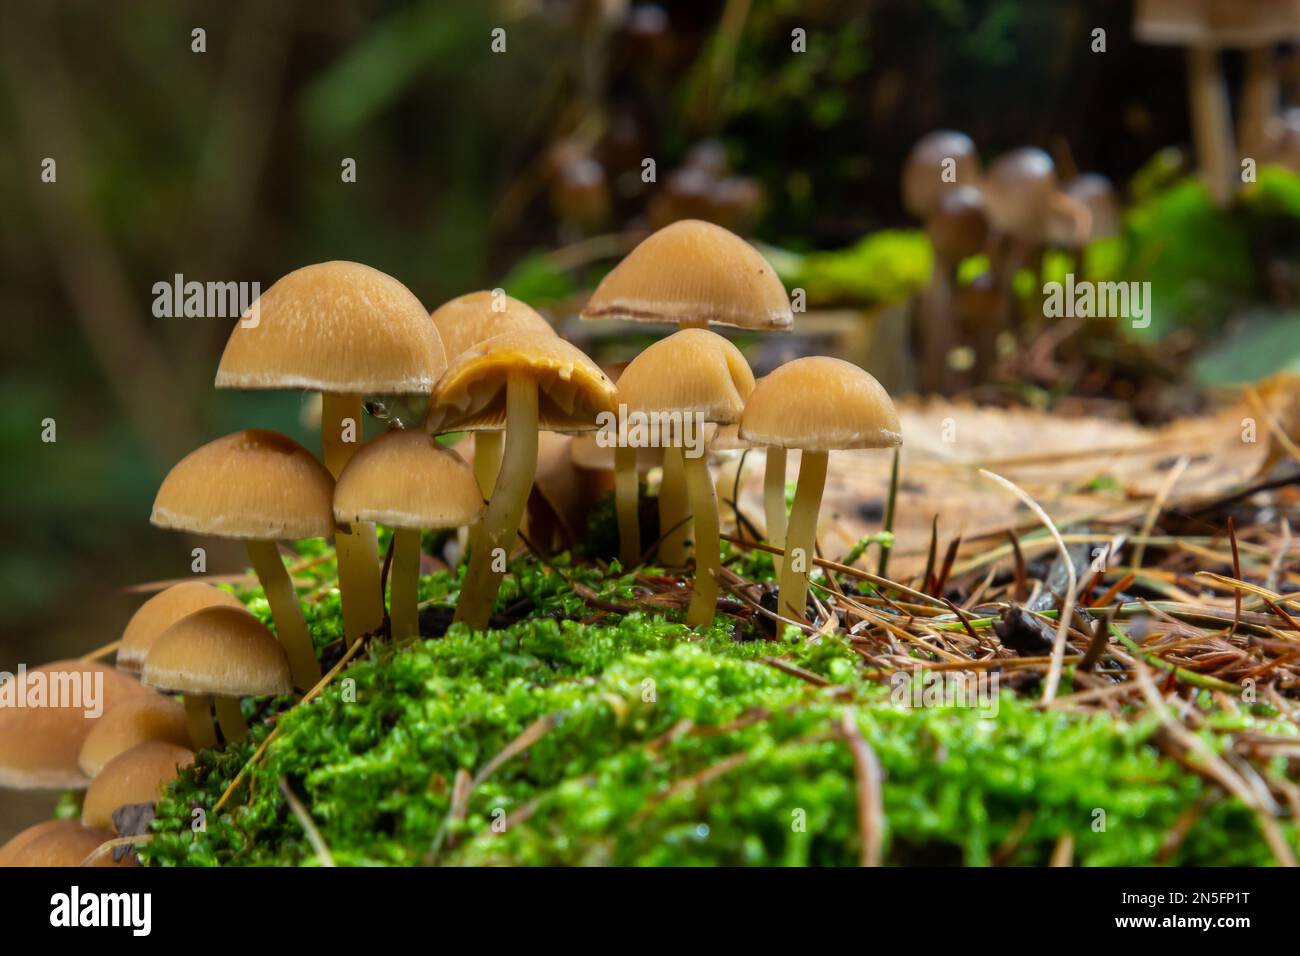 Mushrooms group Kuehneromyces mutabilis on a tree stump. Stock Photo